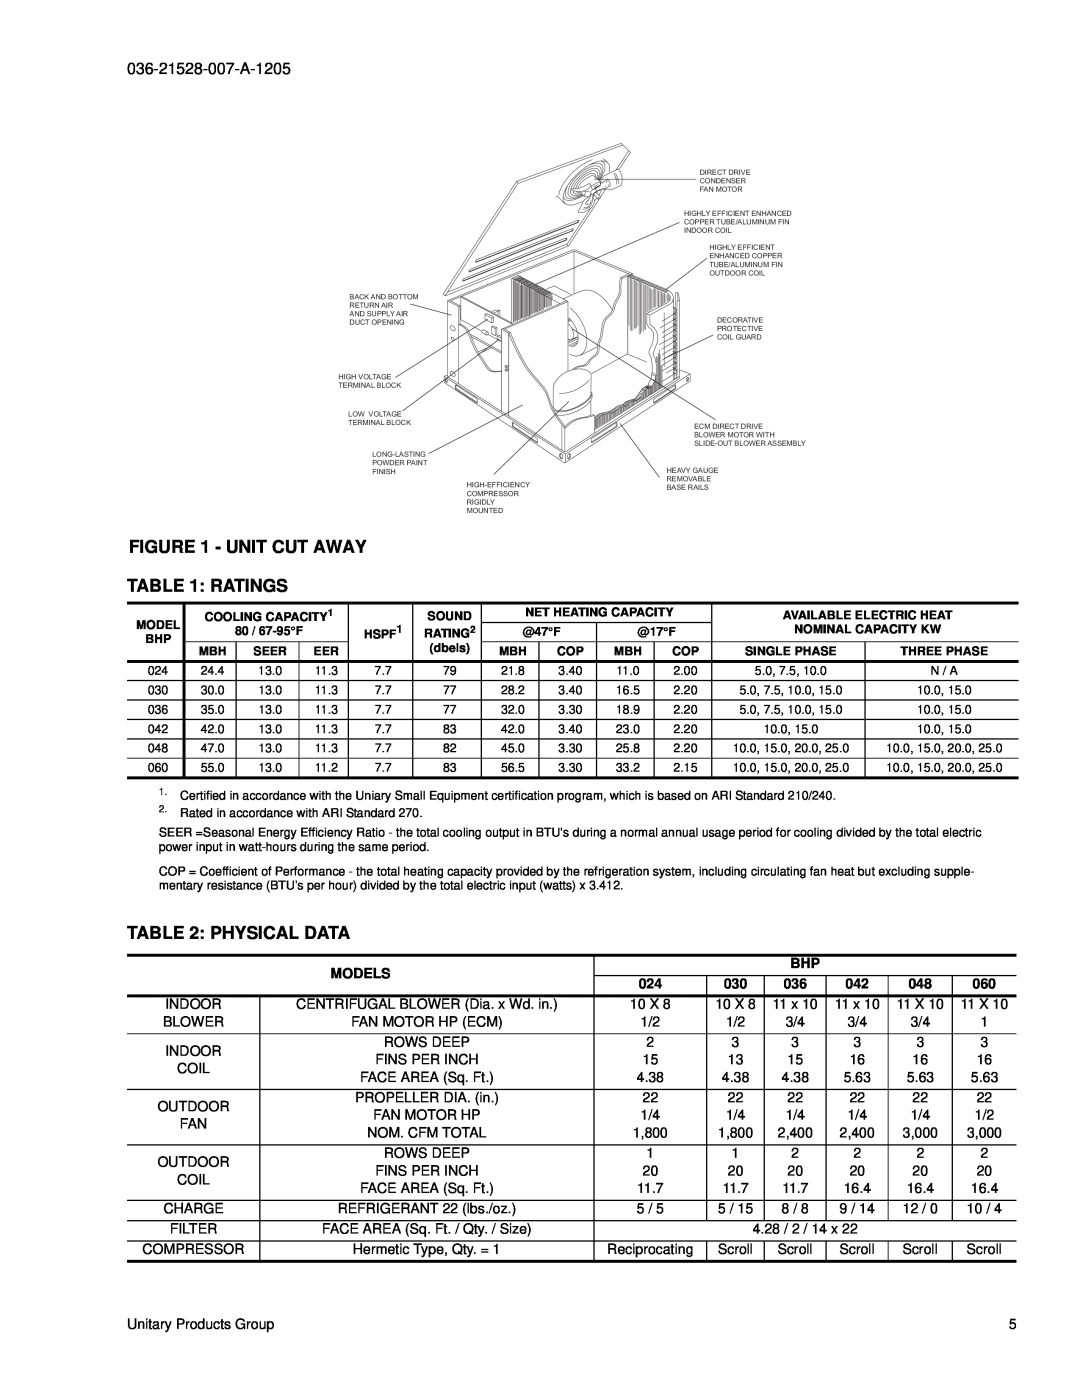 York BHP024 manual Unit Cut Away Ratings, Physical Data, Models 